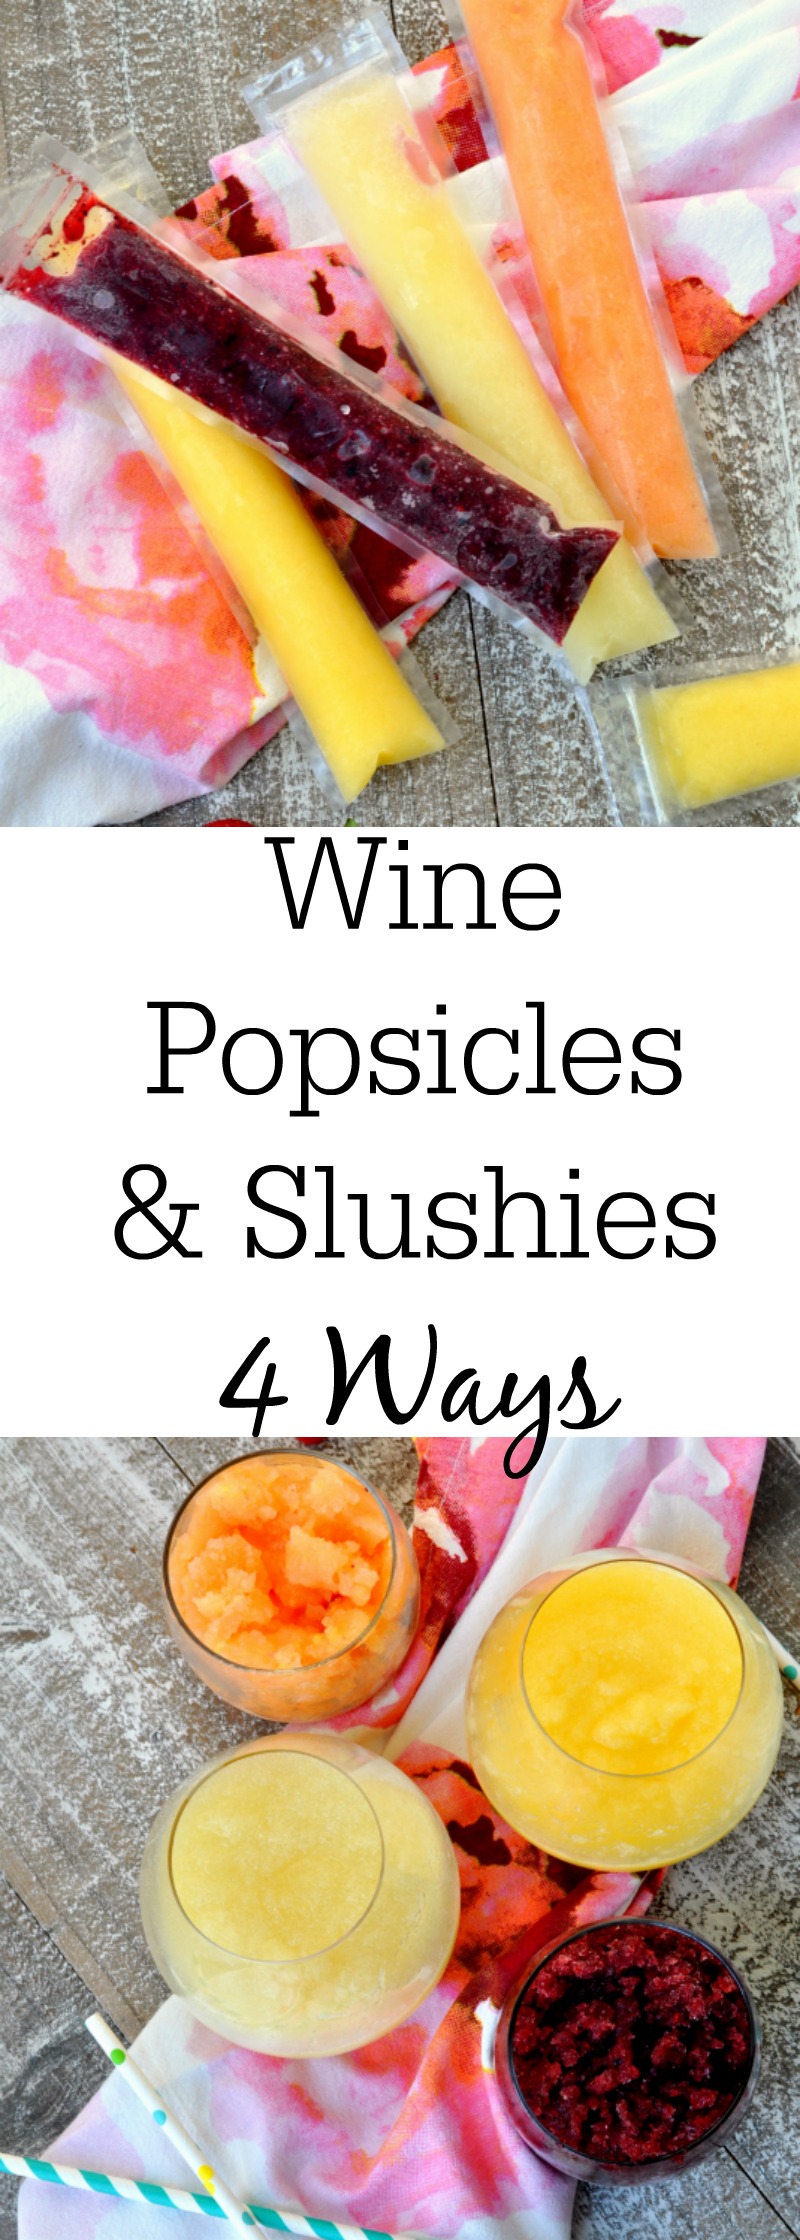 Wine Popsicles and Slushies - 4 Ways